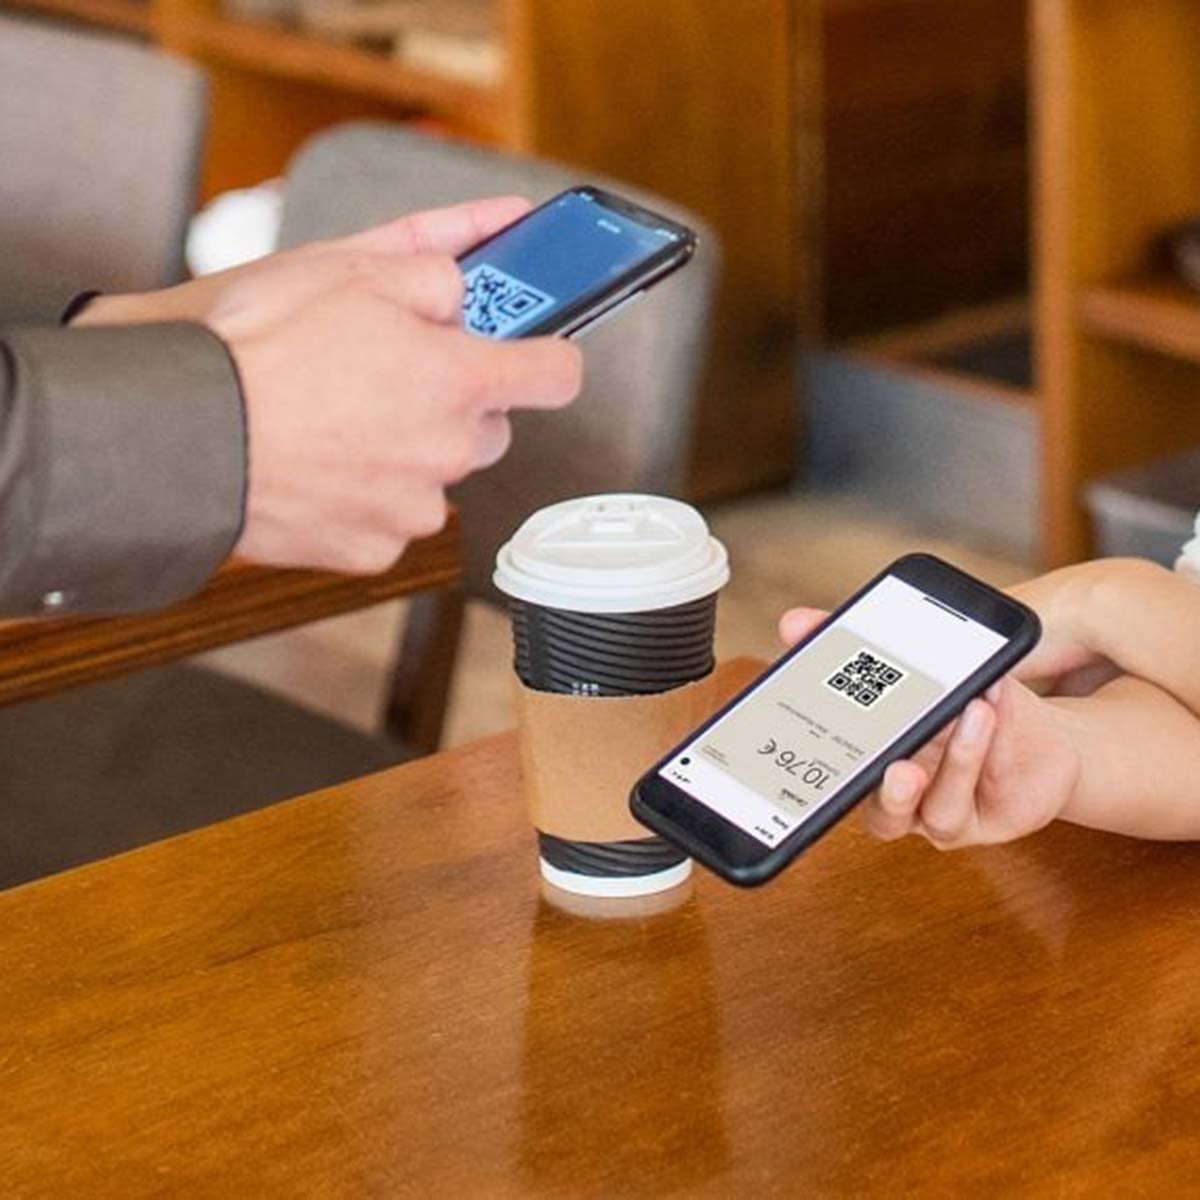 Bezahlen per digitaler Kundenkarte